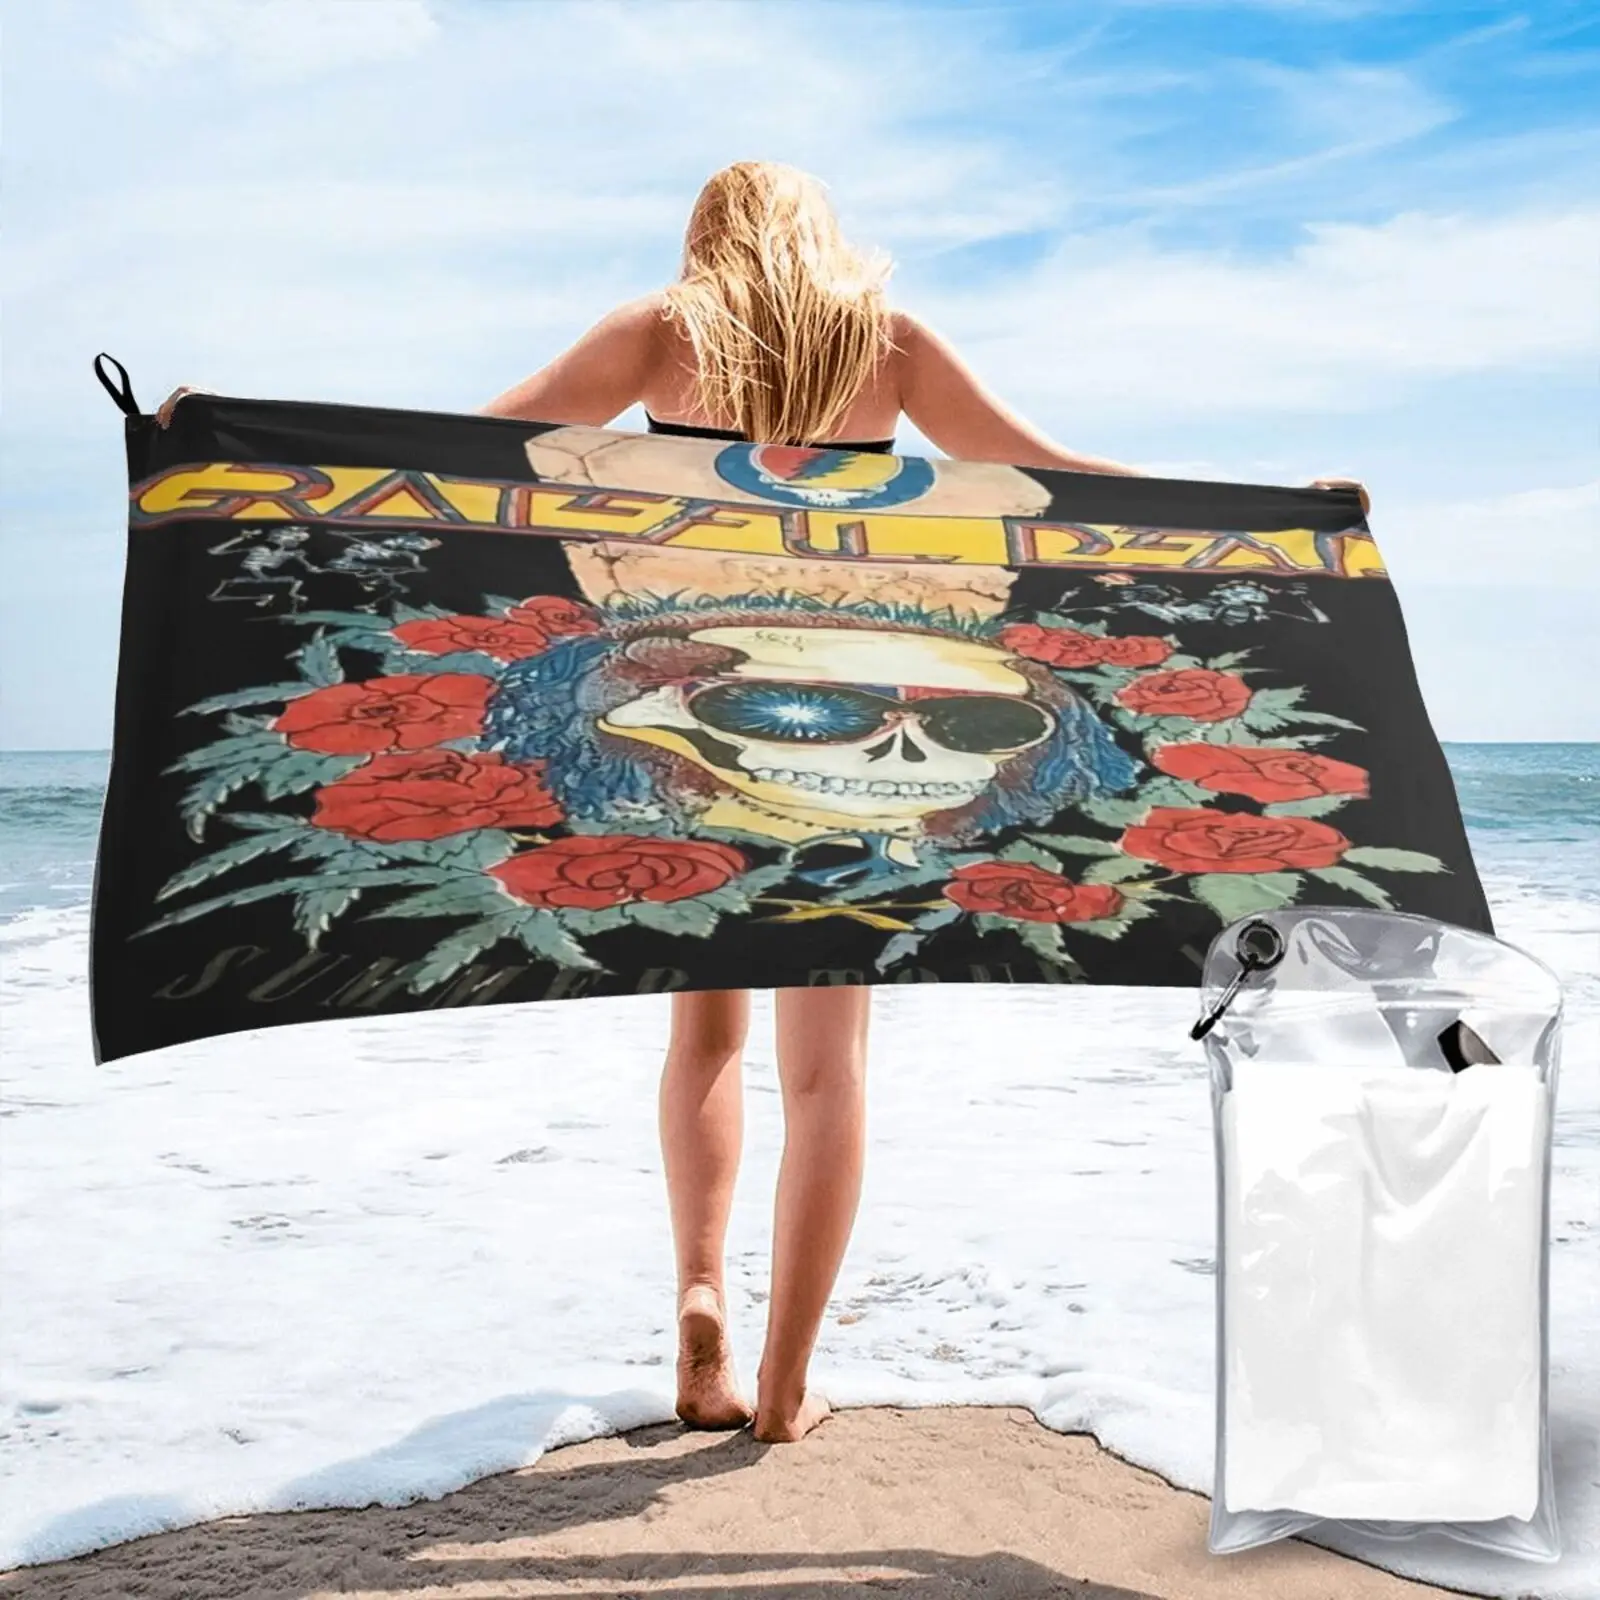 

1989 Grateful Dead Tour пляжное полотенце, Большое банное полотенце для пляжа, пляжное полотенце, роскошное Полотенце Для ванны и душа, морское пляжно...